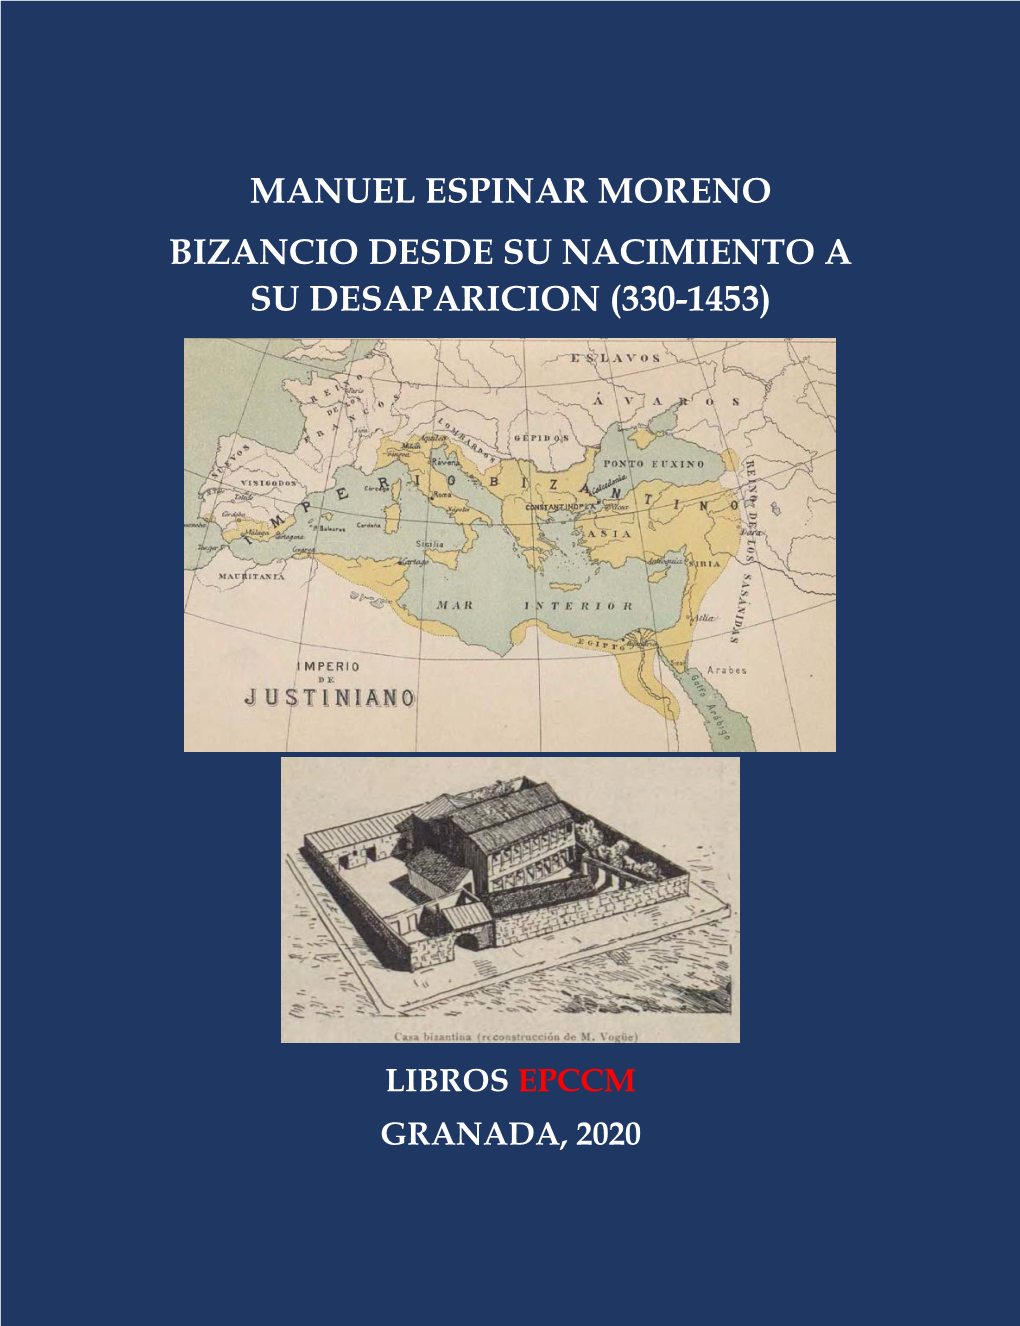 Manuel Espinar Moreno Bizancio Desde Su Nacimiento a Su Desaparicion (330-1453)